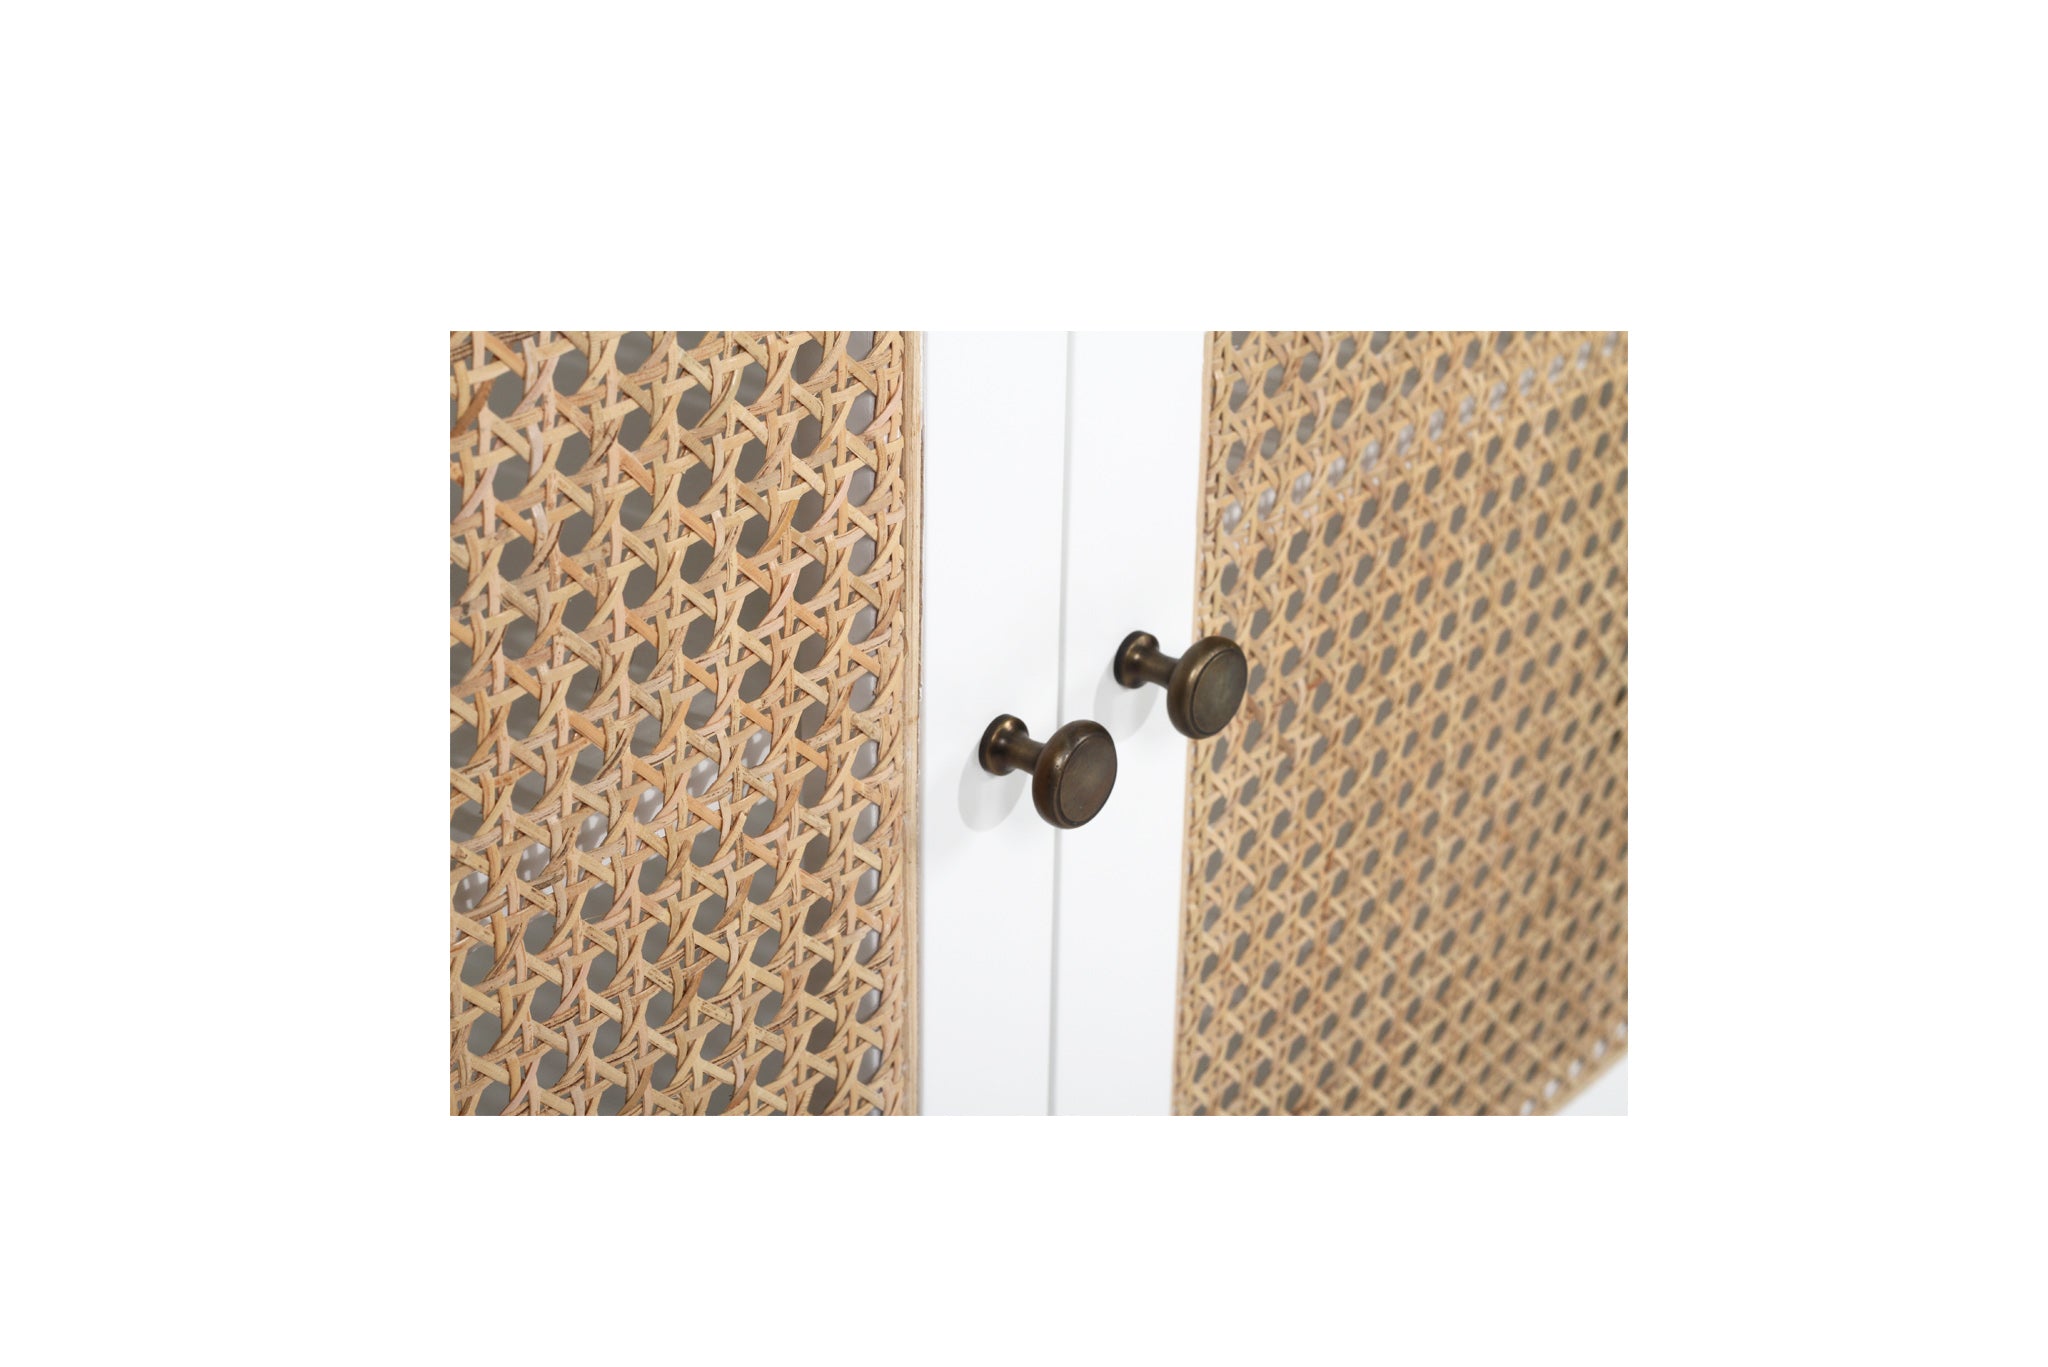 Charles Teak & Rattan 3 Door Sideboard – White